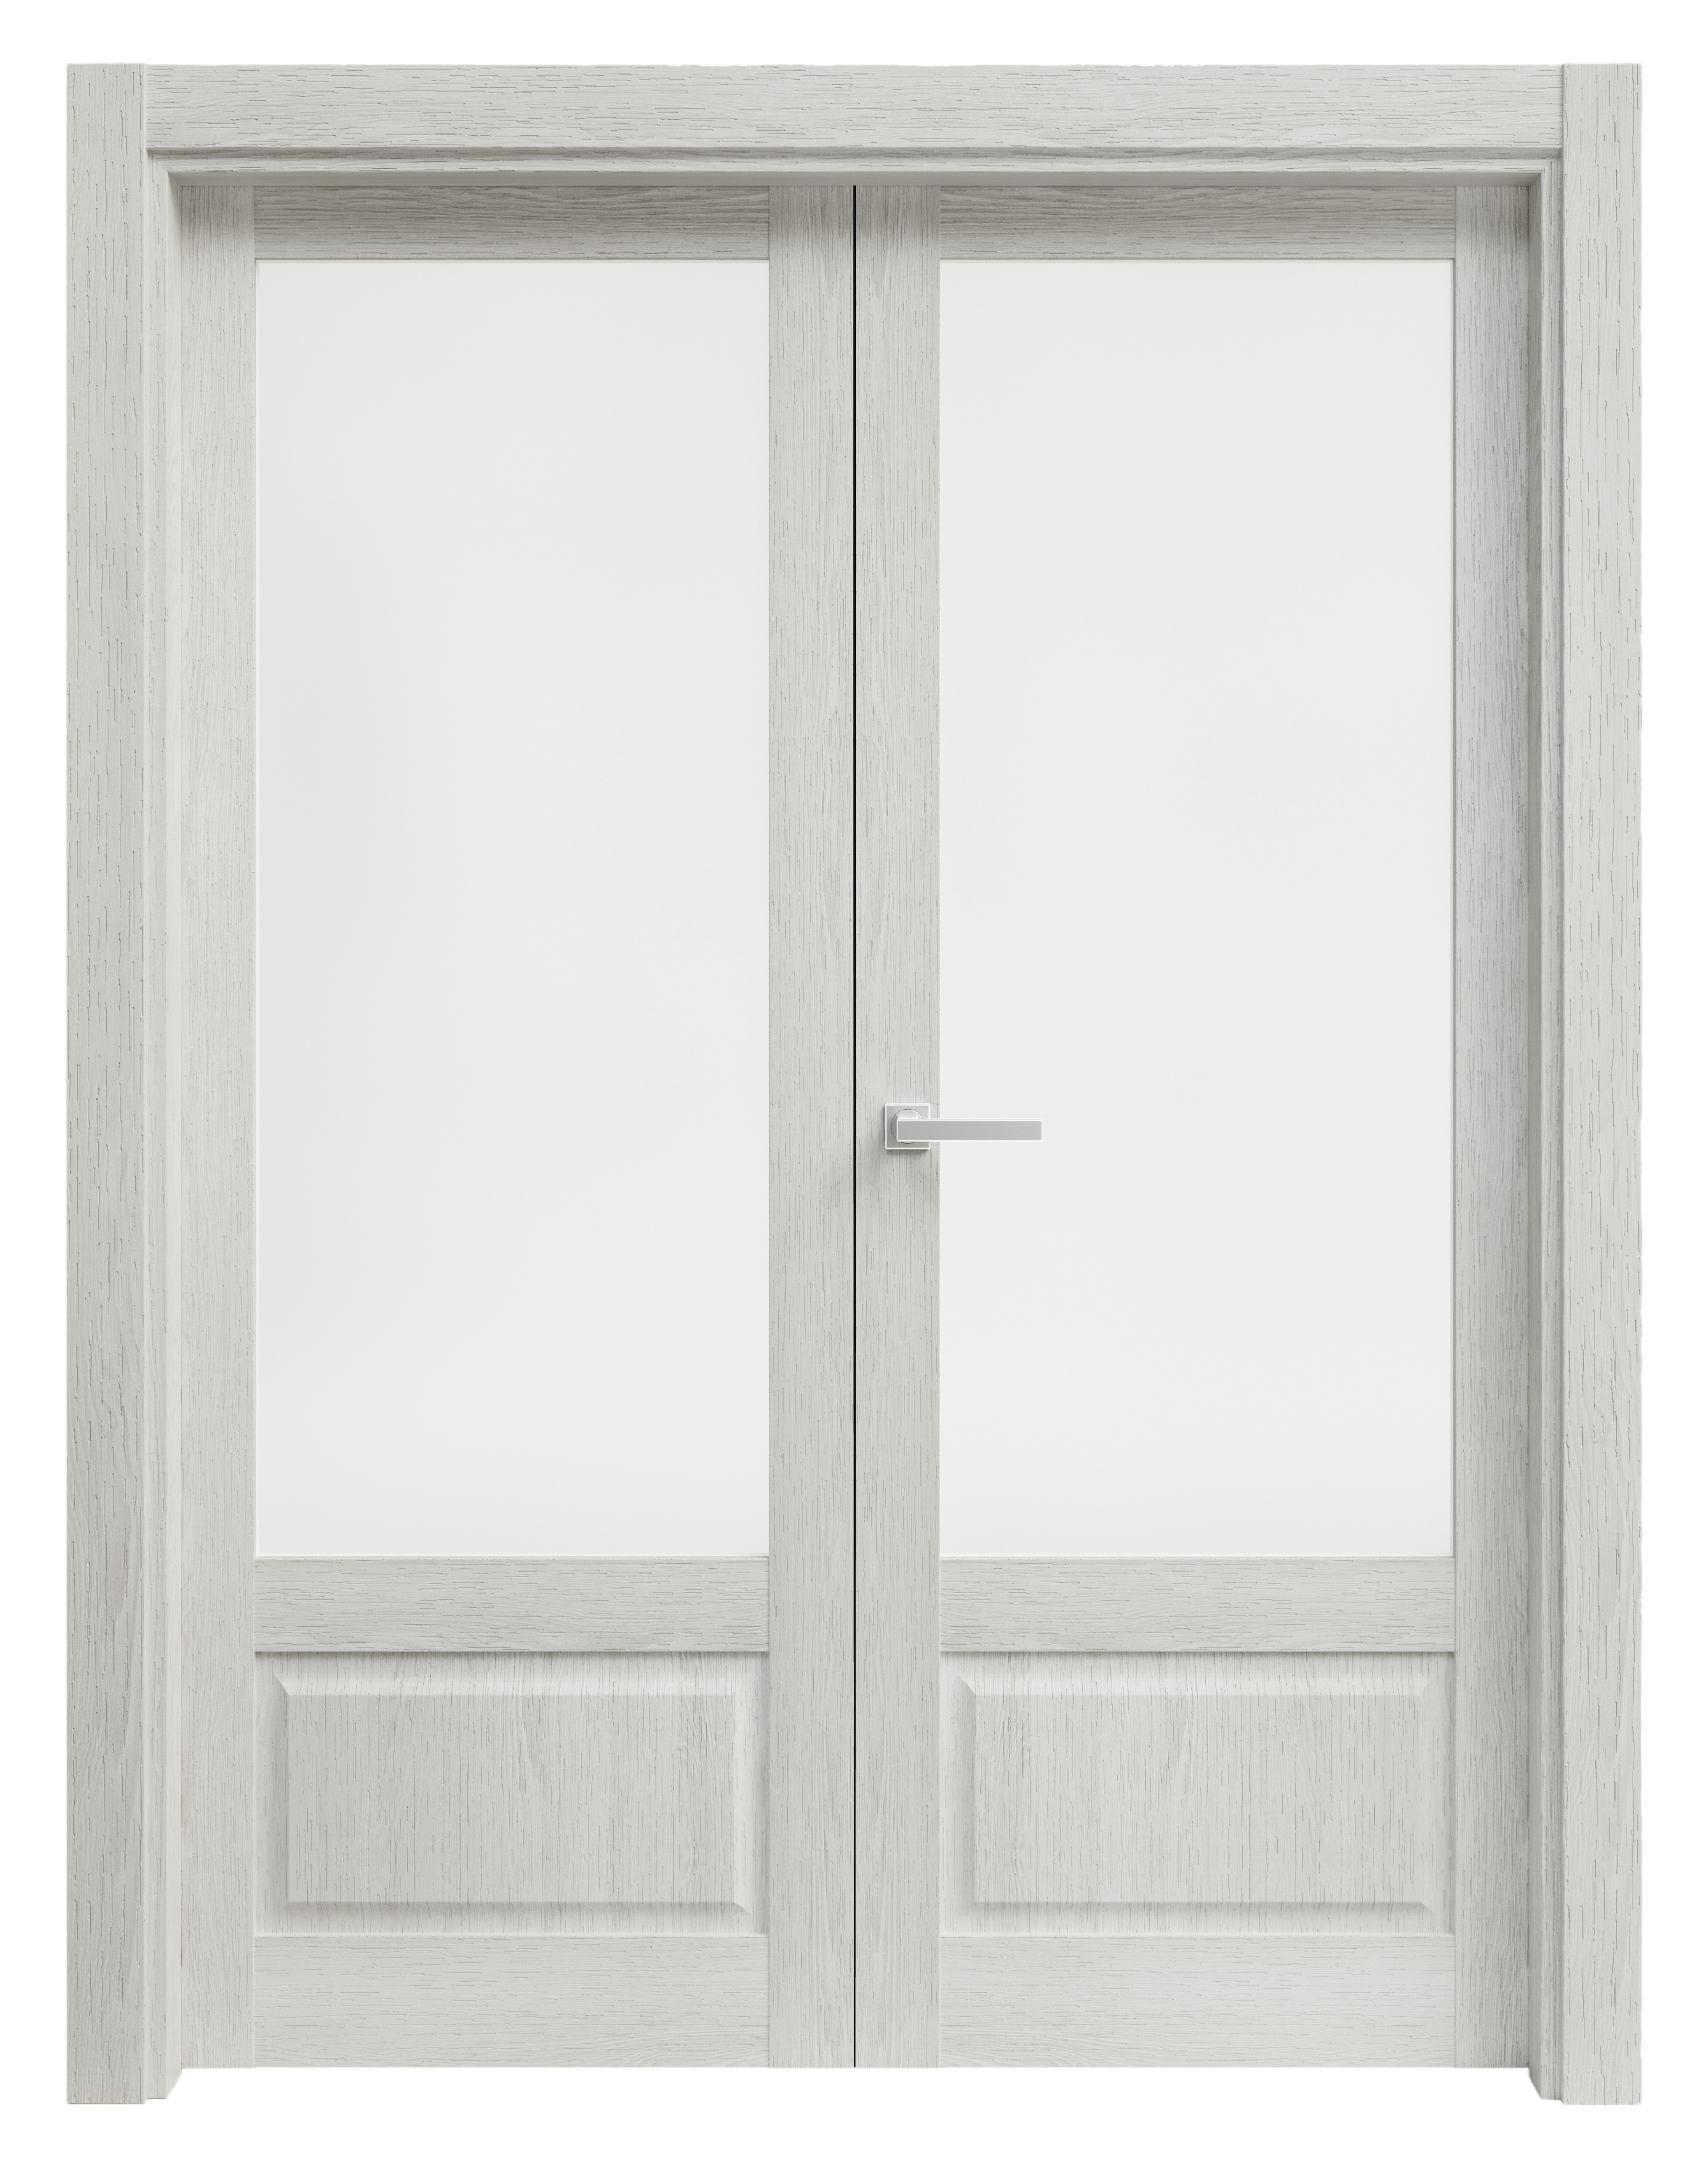 Puerta abatible sofia blanca line plus con cristal blanco izquierda de 105 c